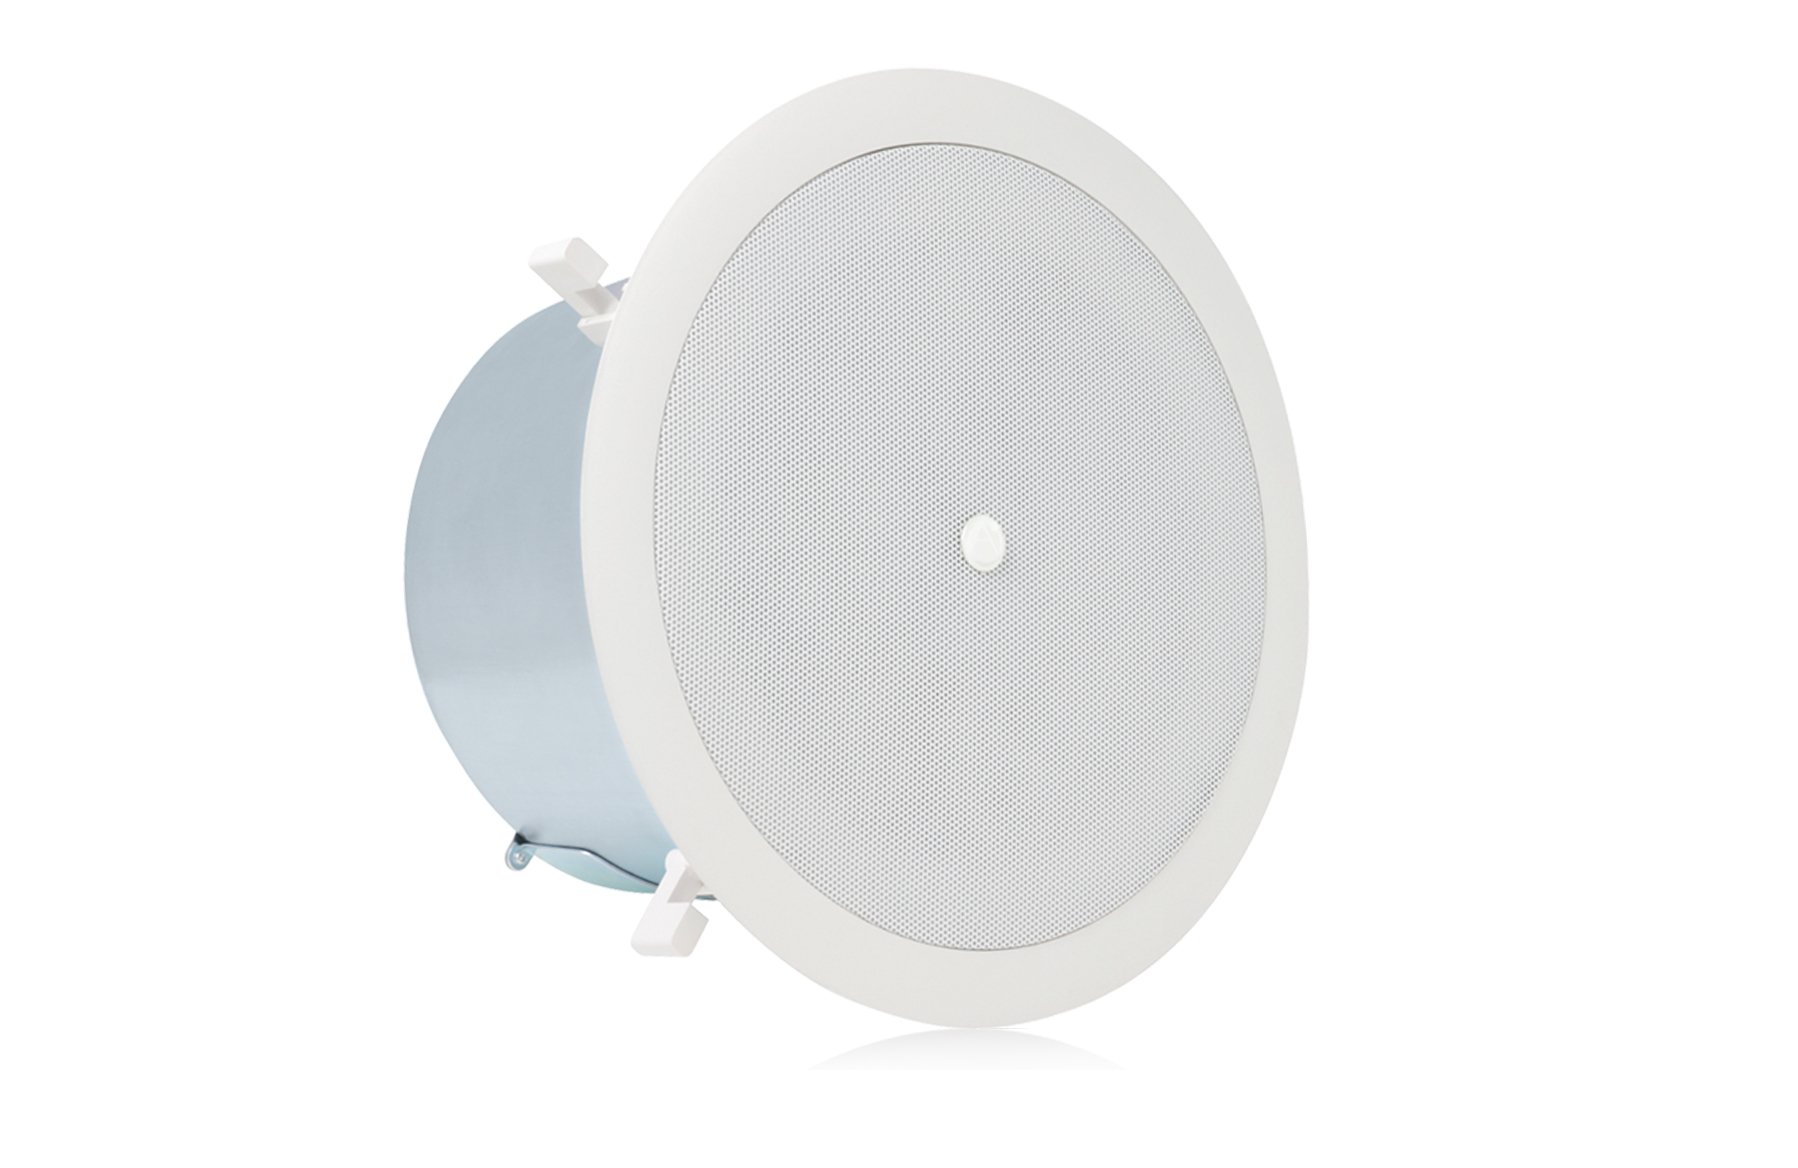 Atlas Sound Fap62t 6 30w 70v Ceiling Speaker Full Compass Systems